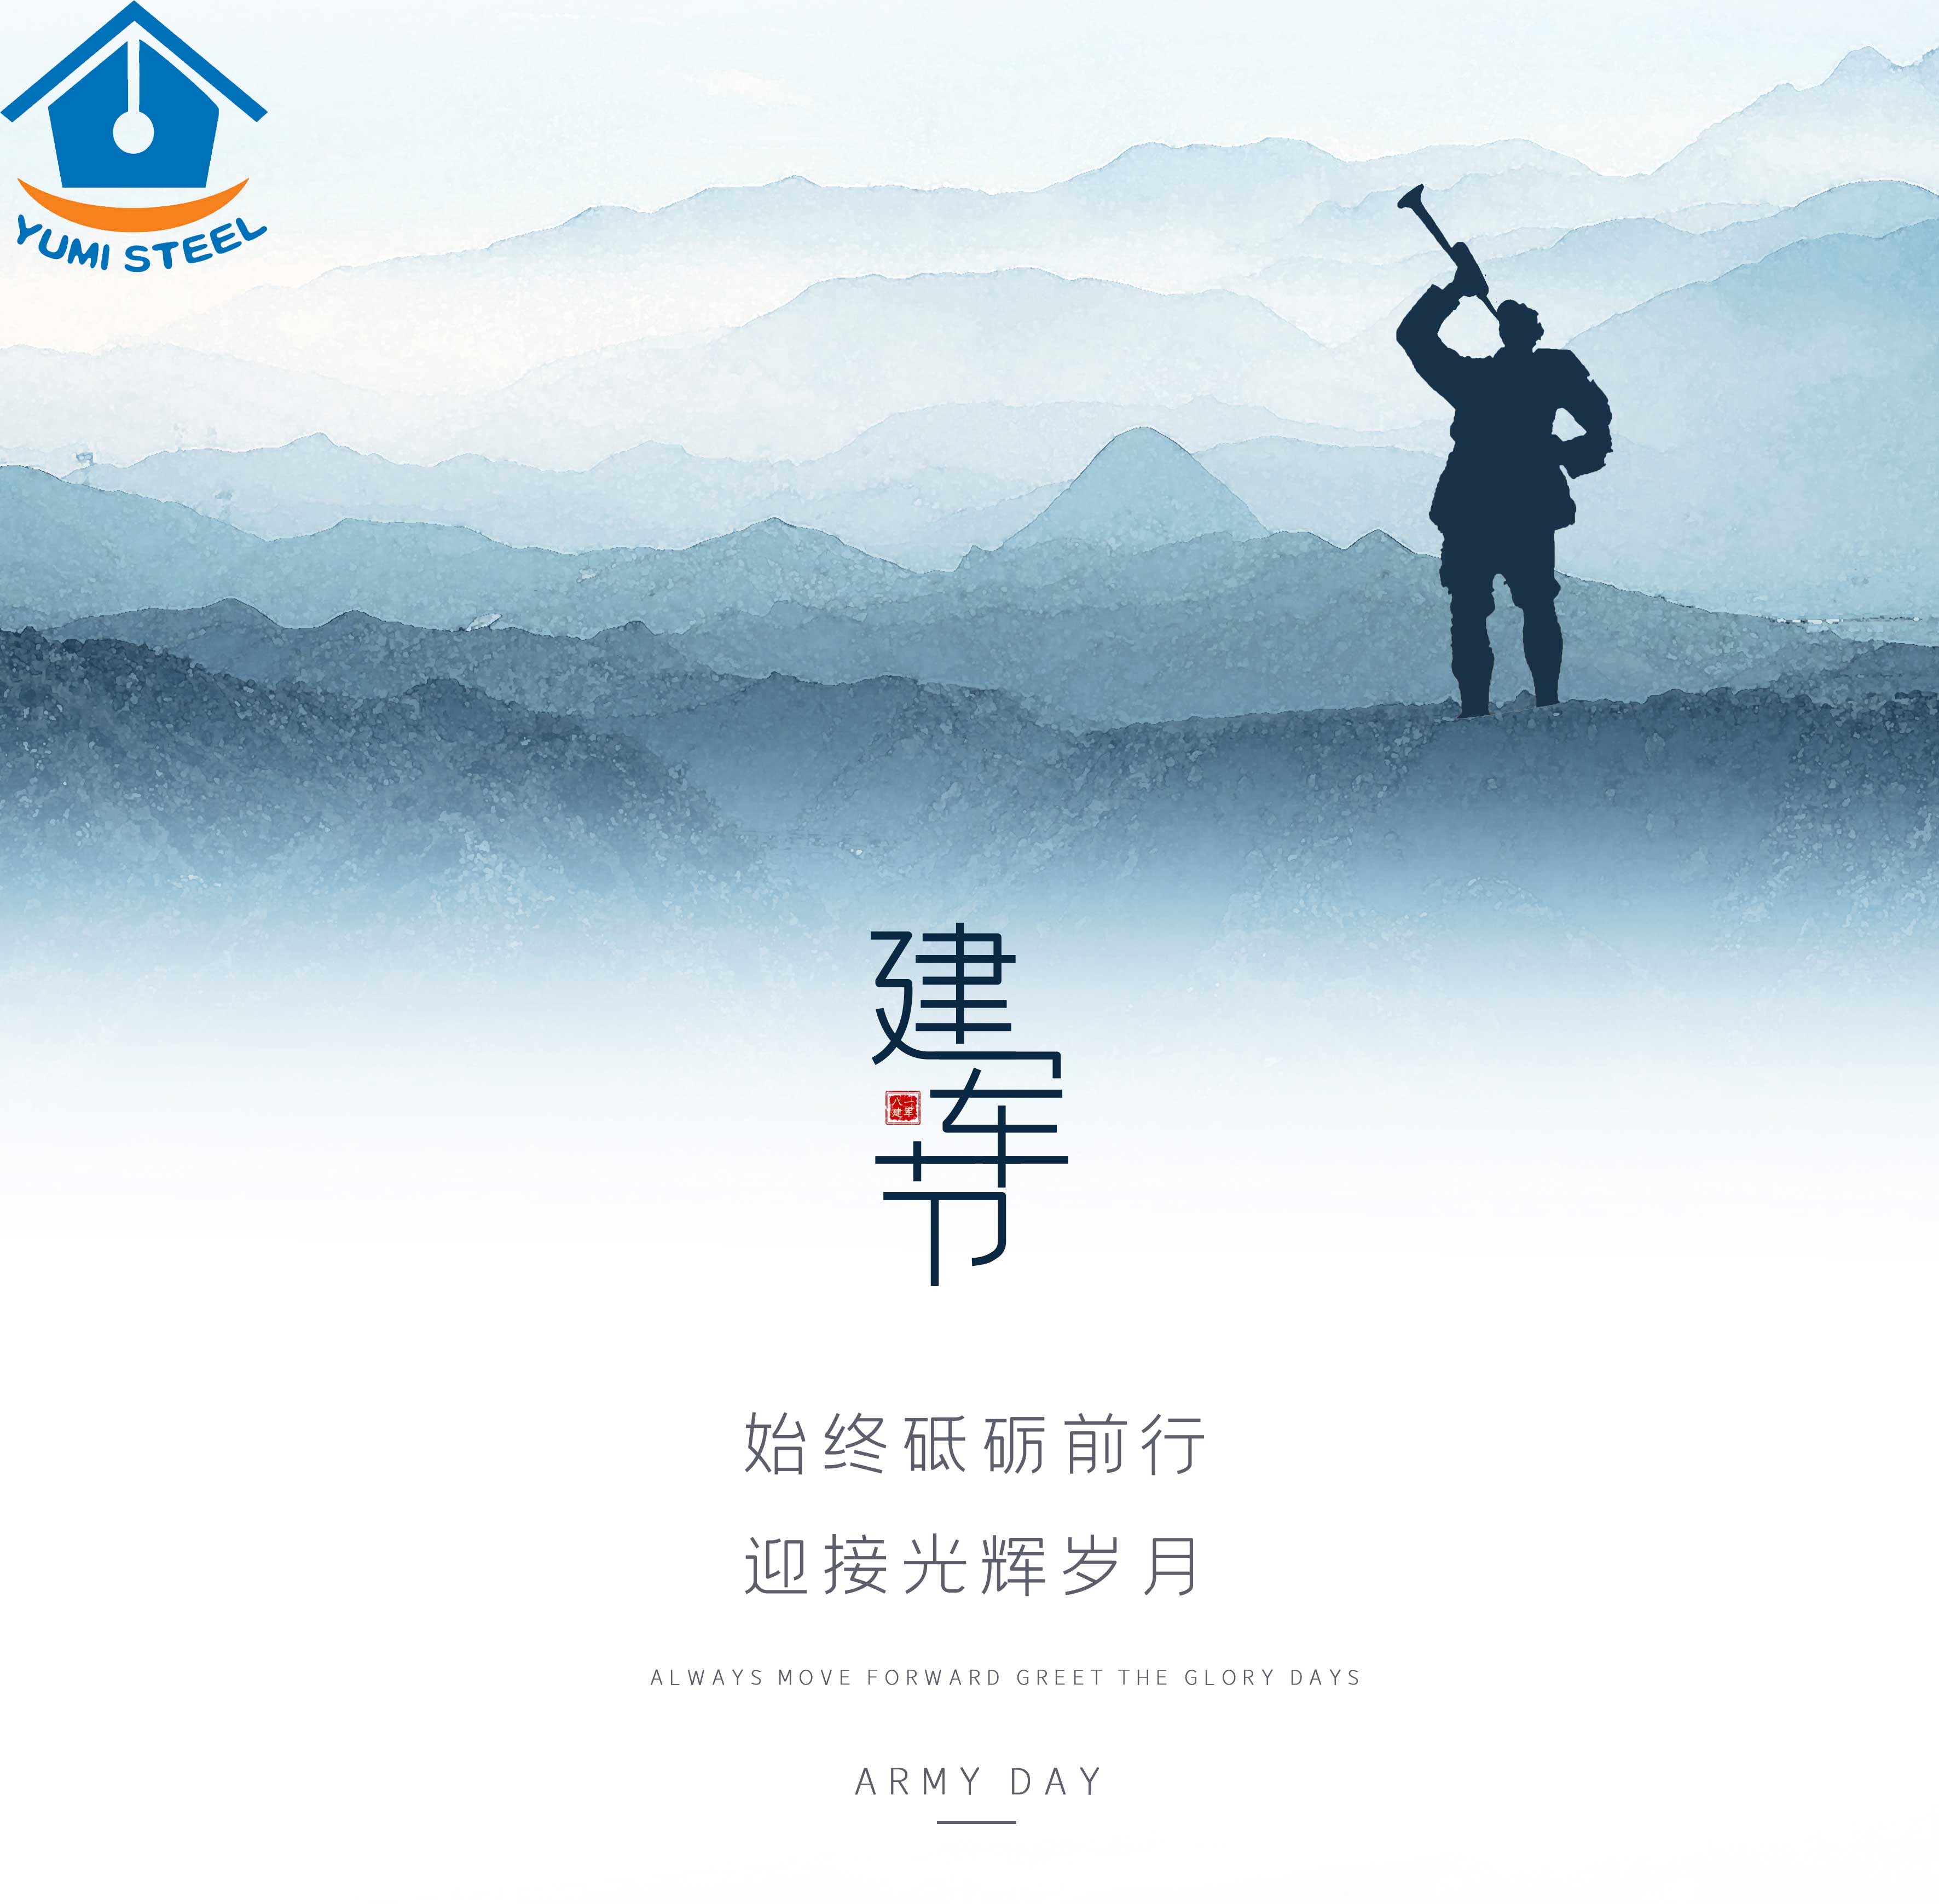 Army Day--Xiamen Yumi